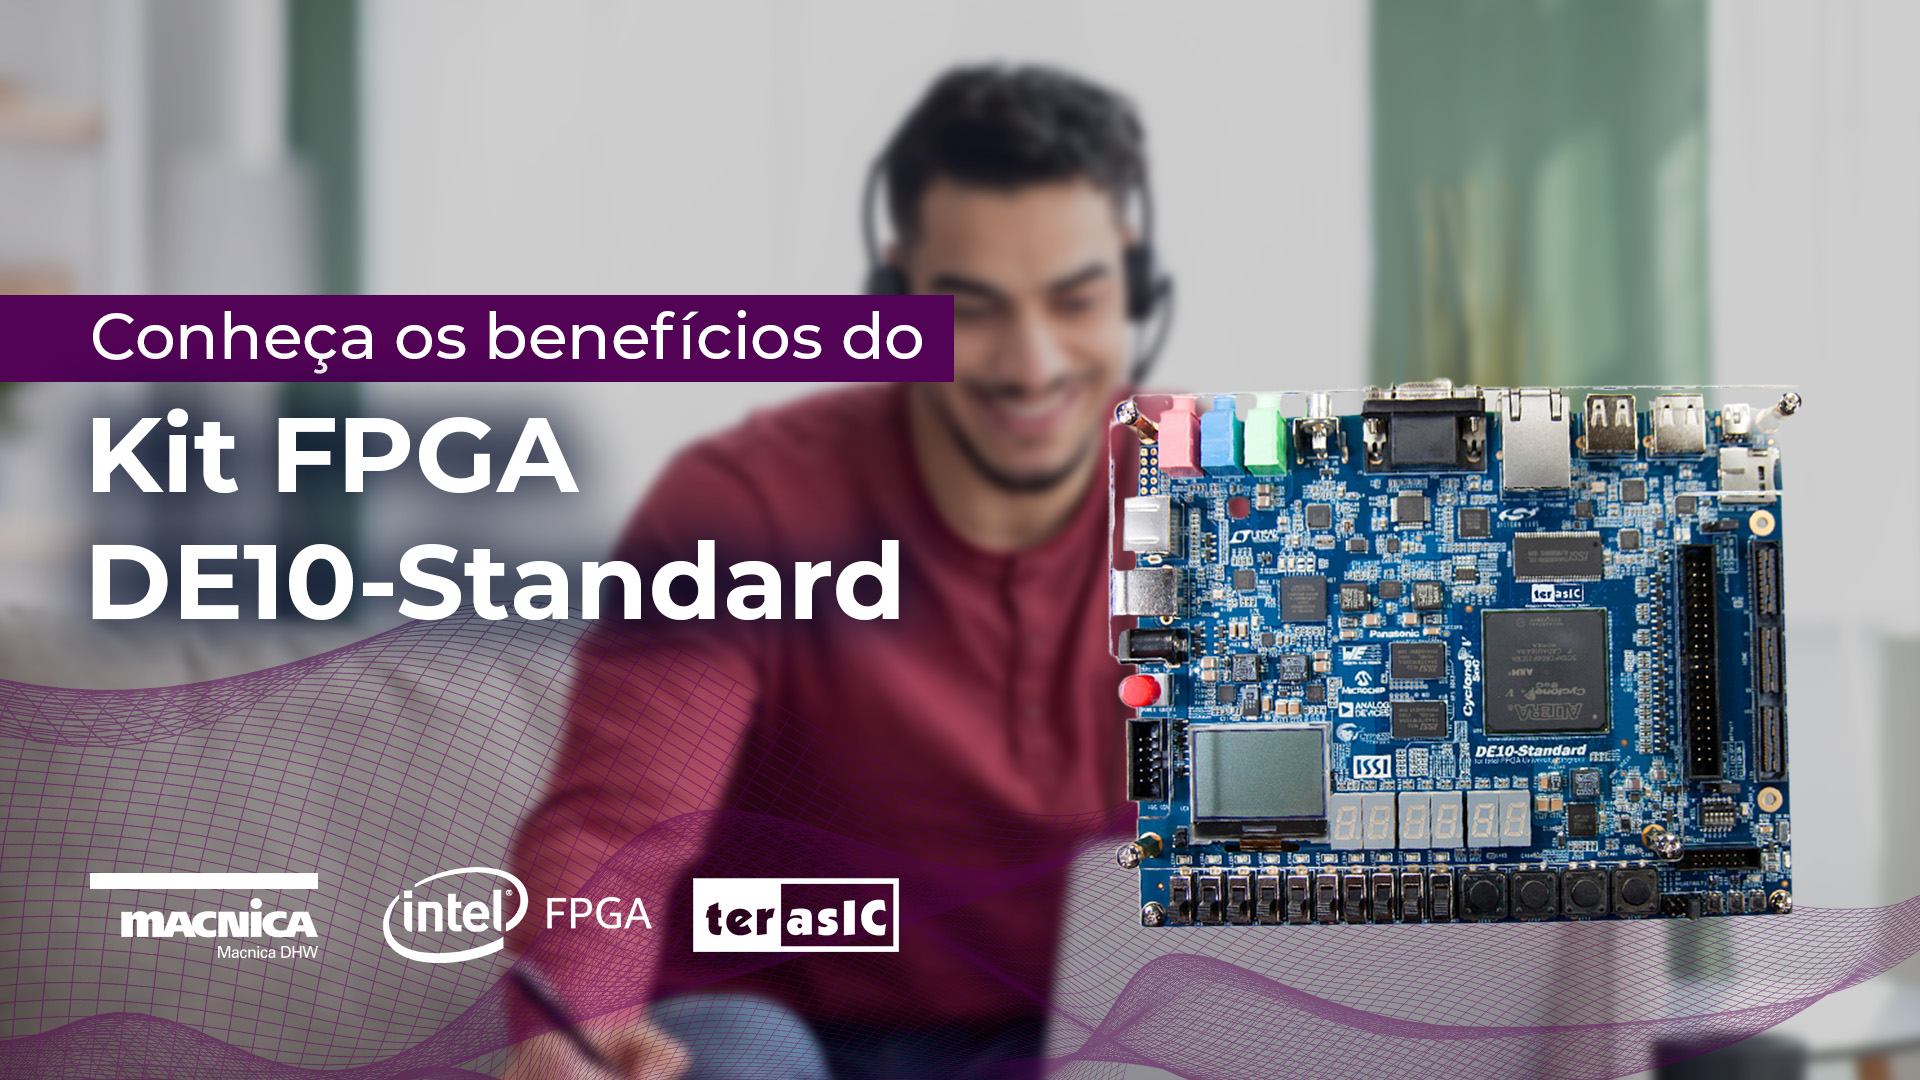 Conheça os benefícios do kit FPGA DE10-Standard